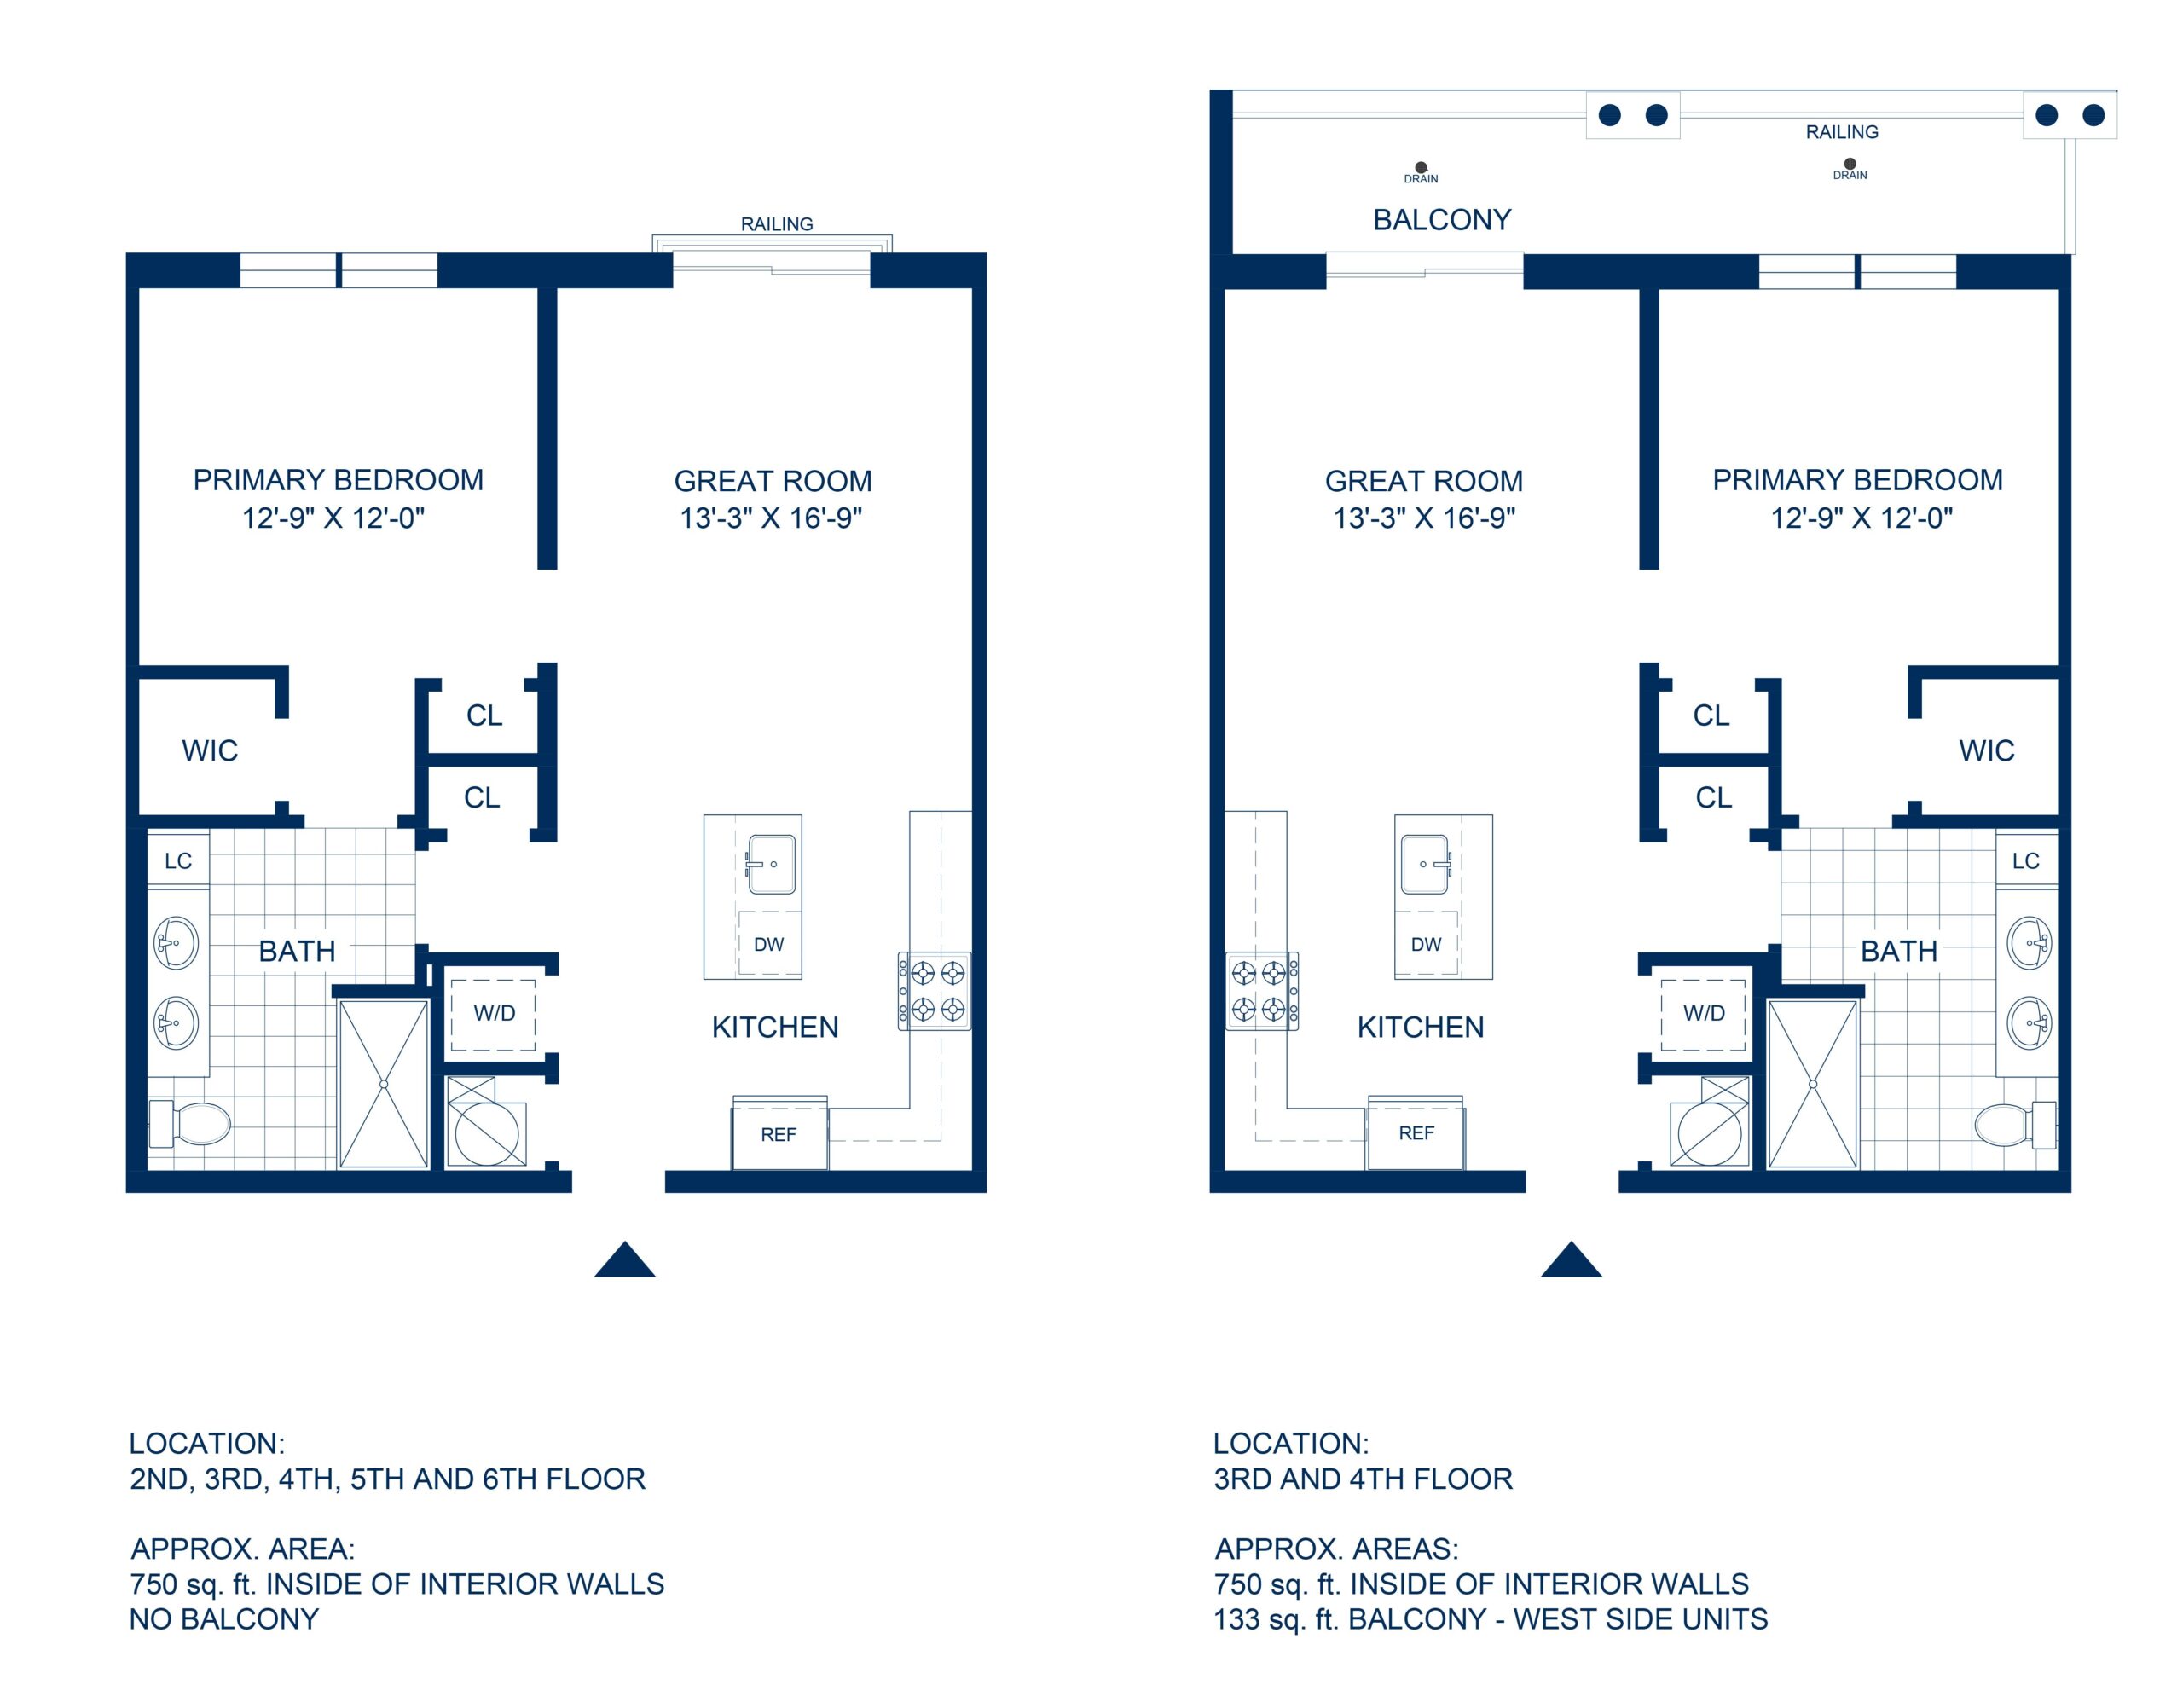 Adelphi Residences Floor Plan - 1 Bedroom - View 1